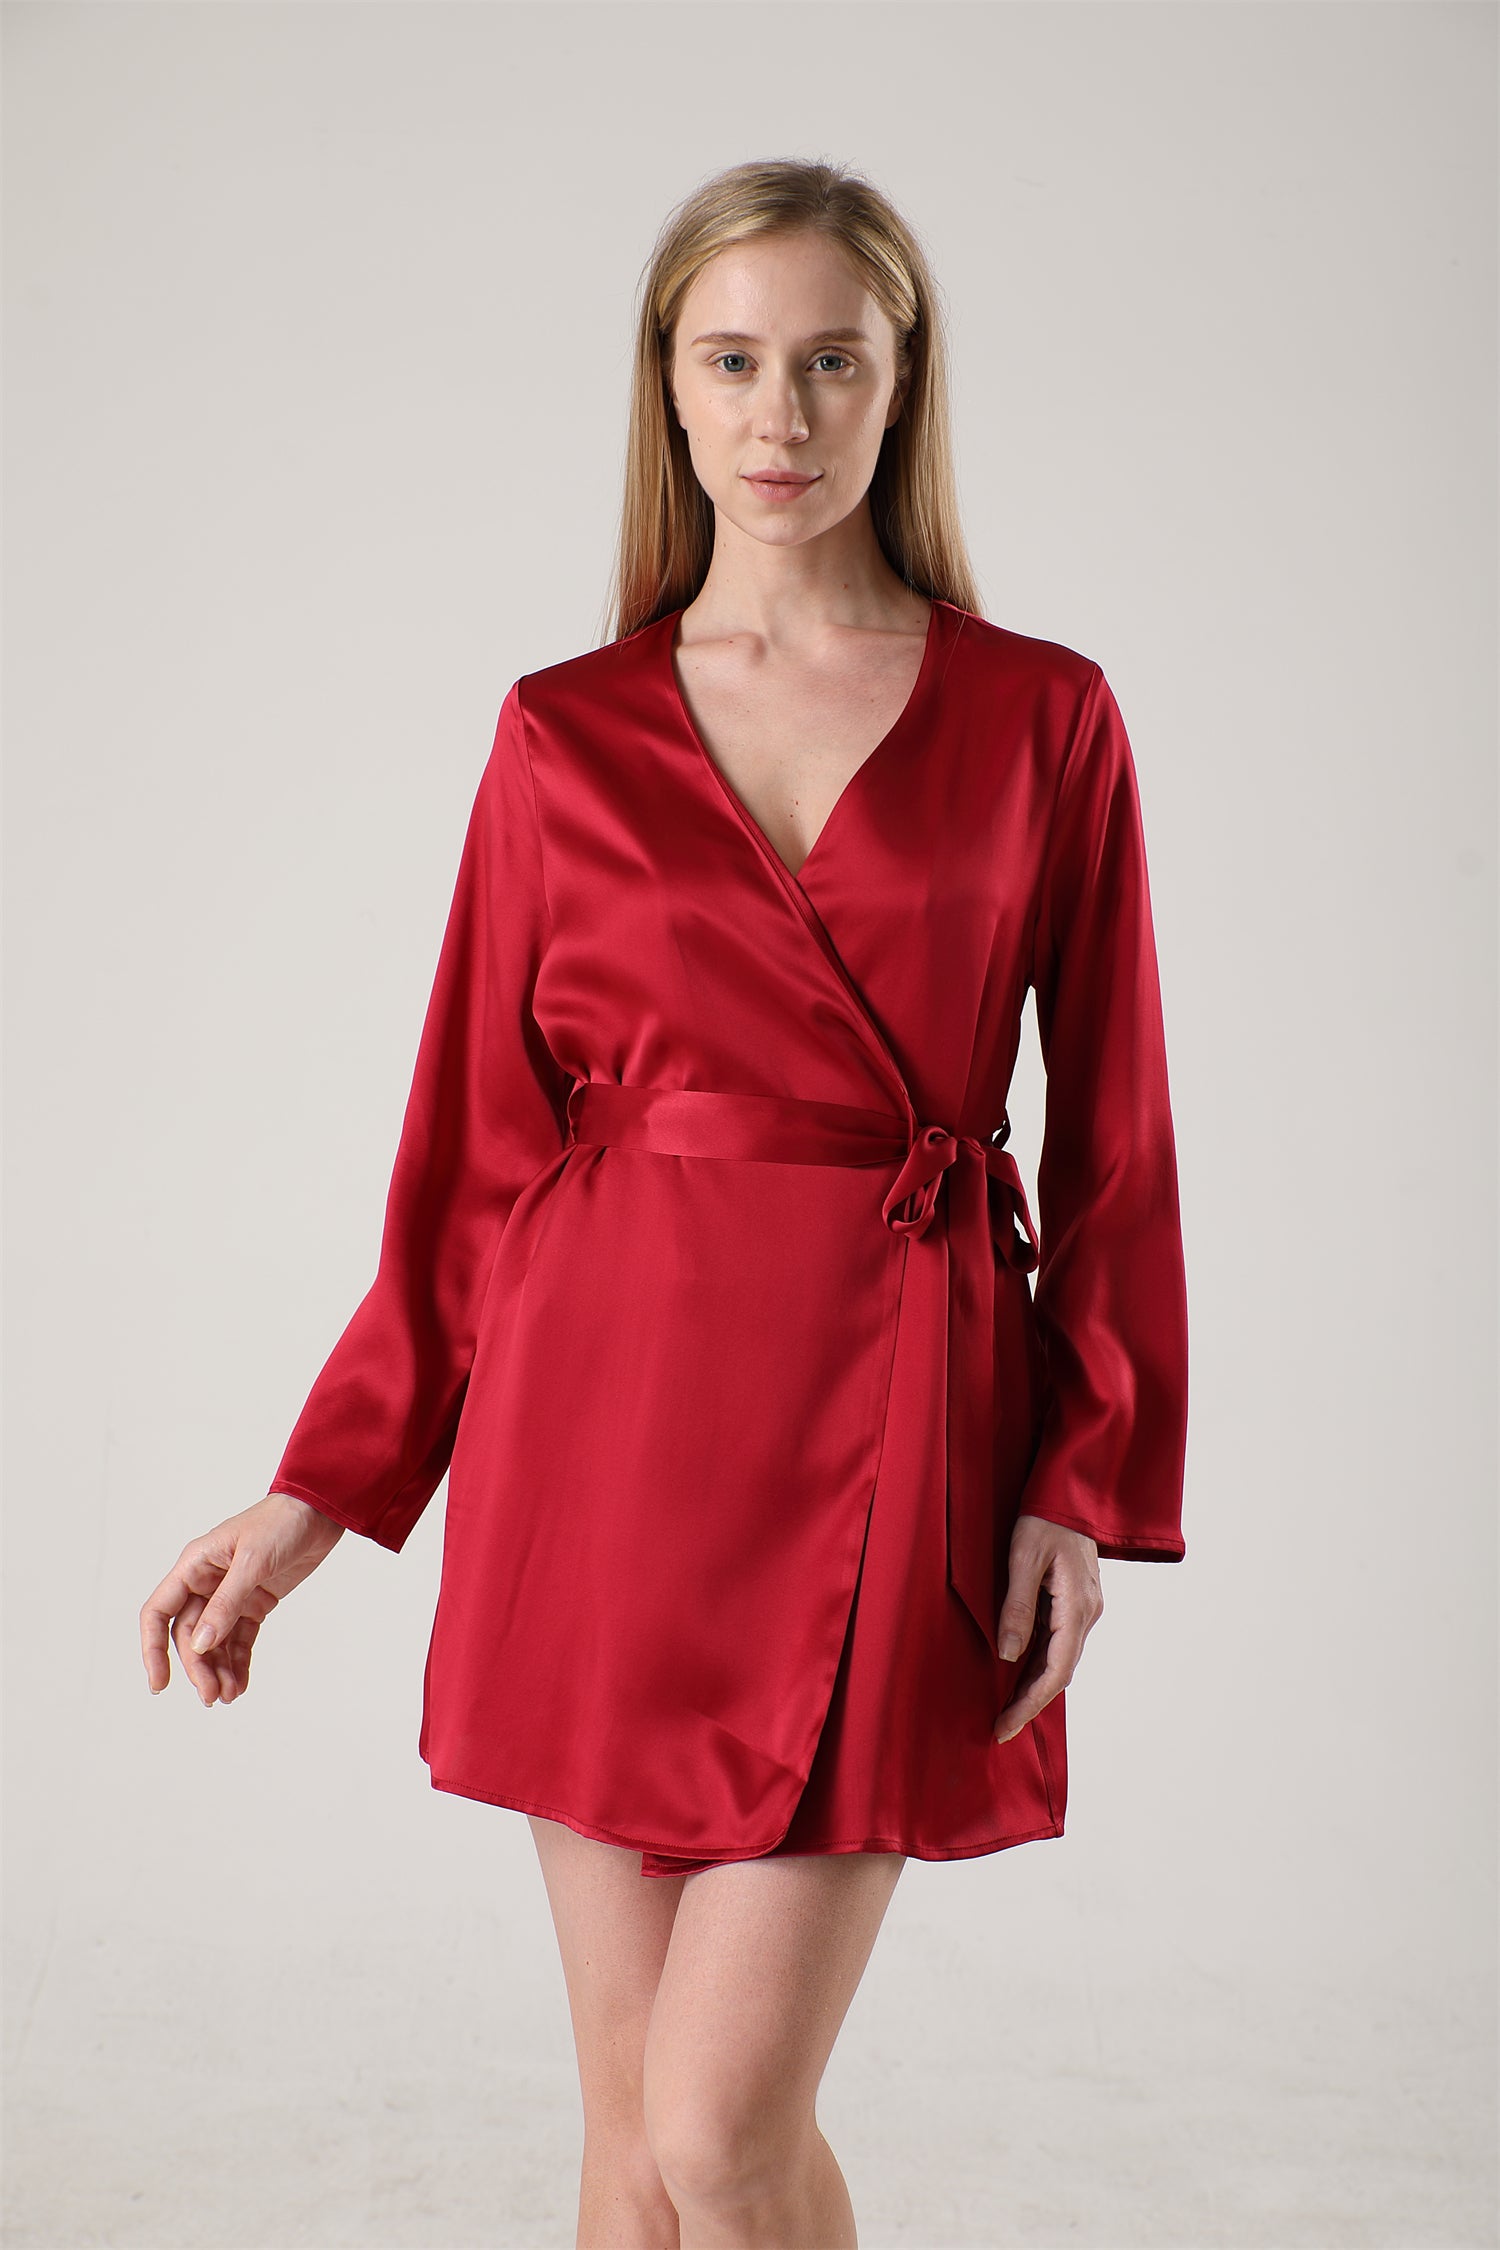 Fashion Silk Women Lingerie Lace Sleepwear - YorMarket - Shop and